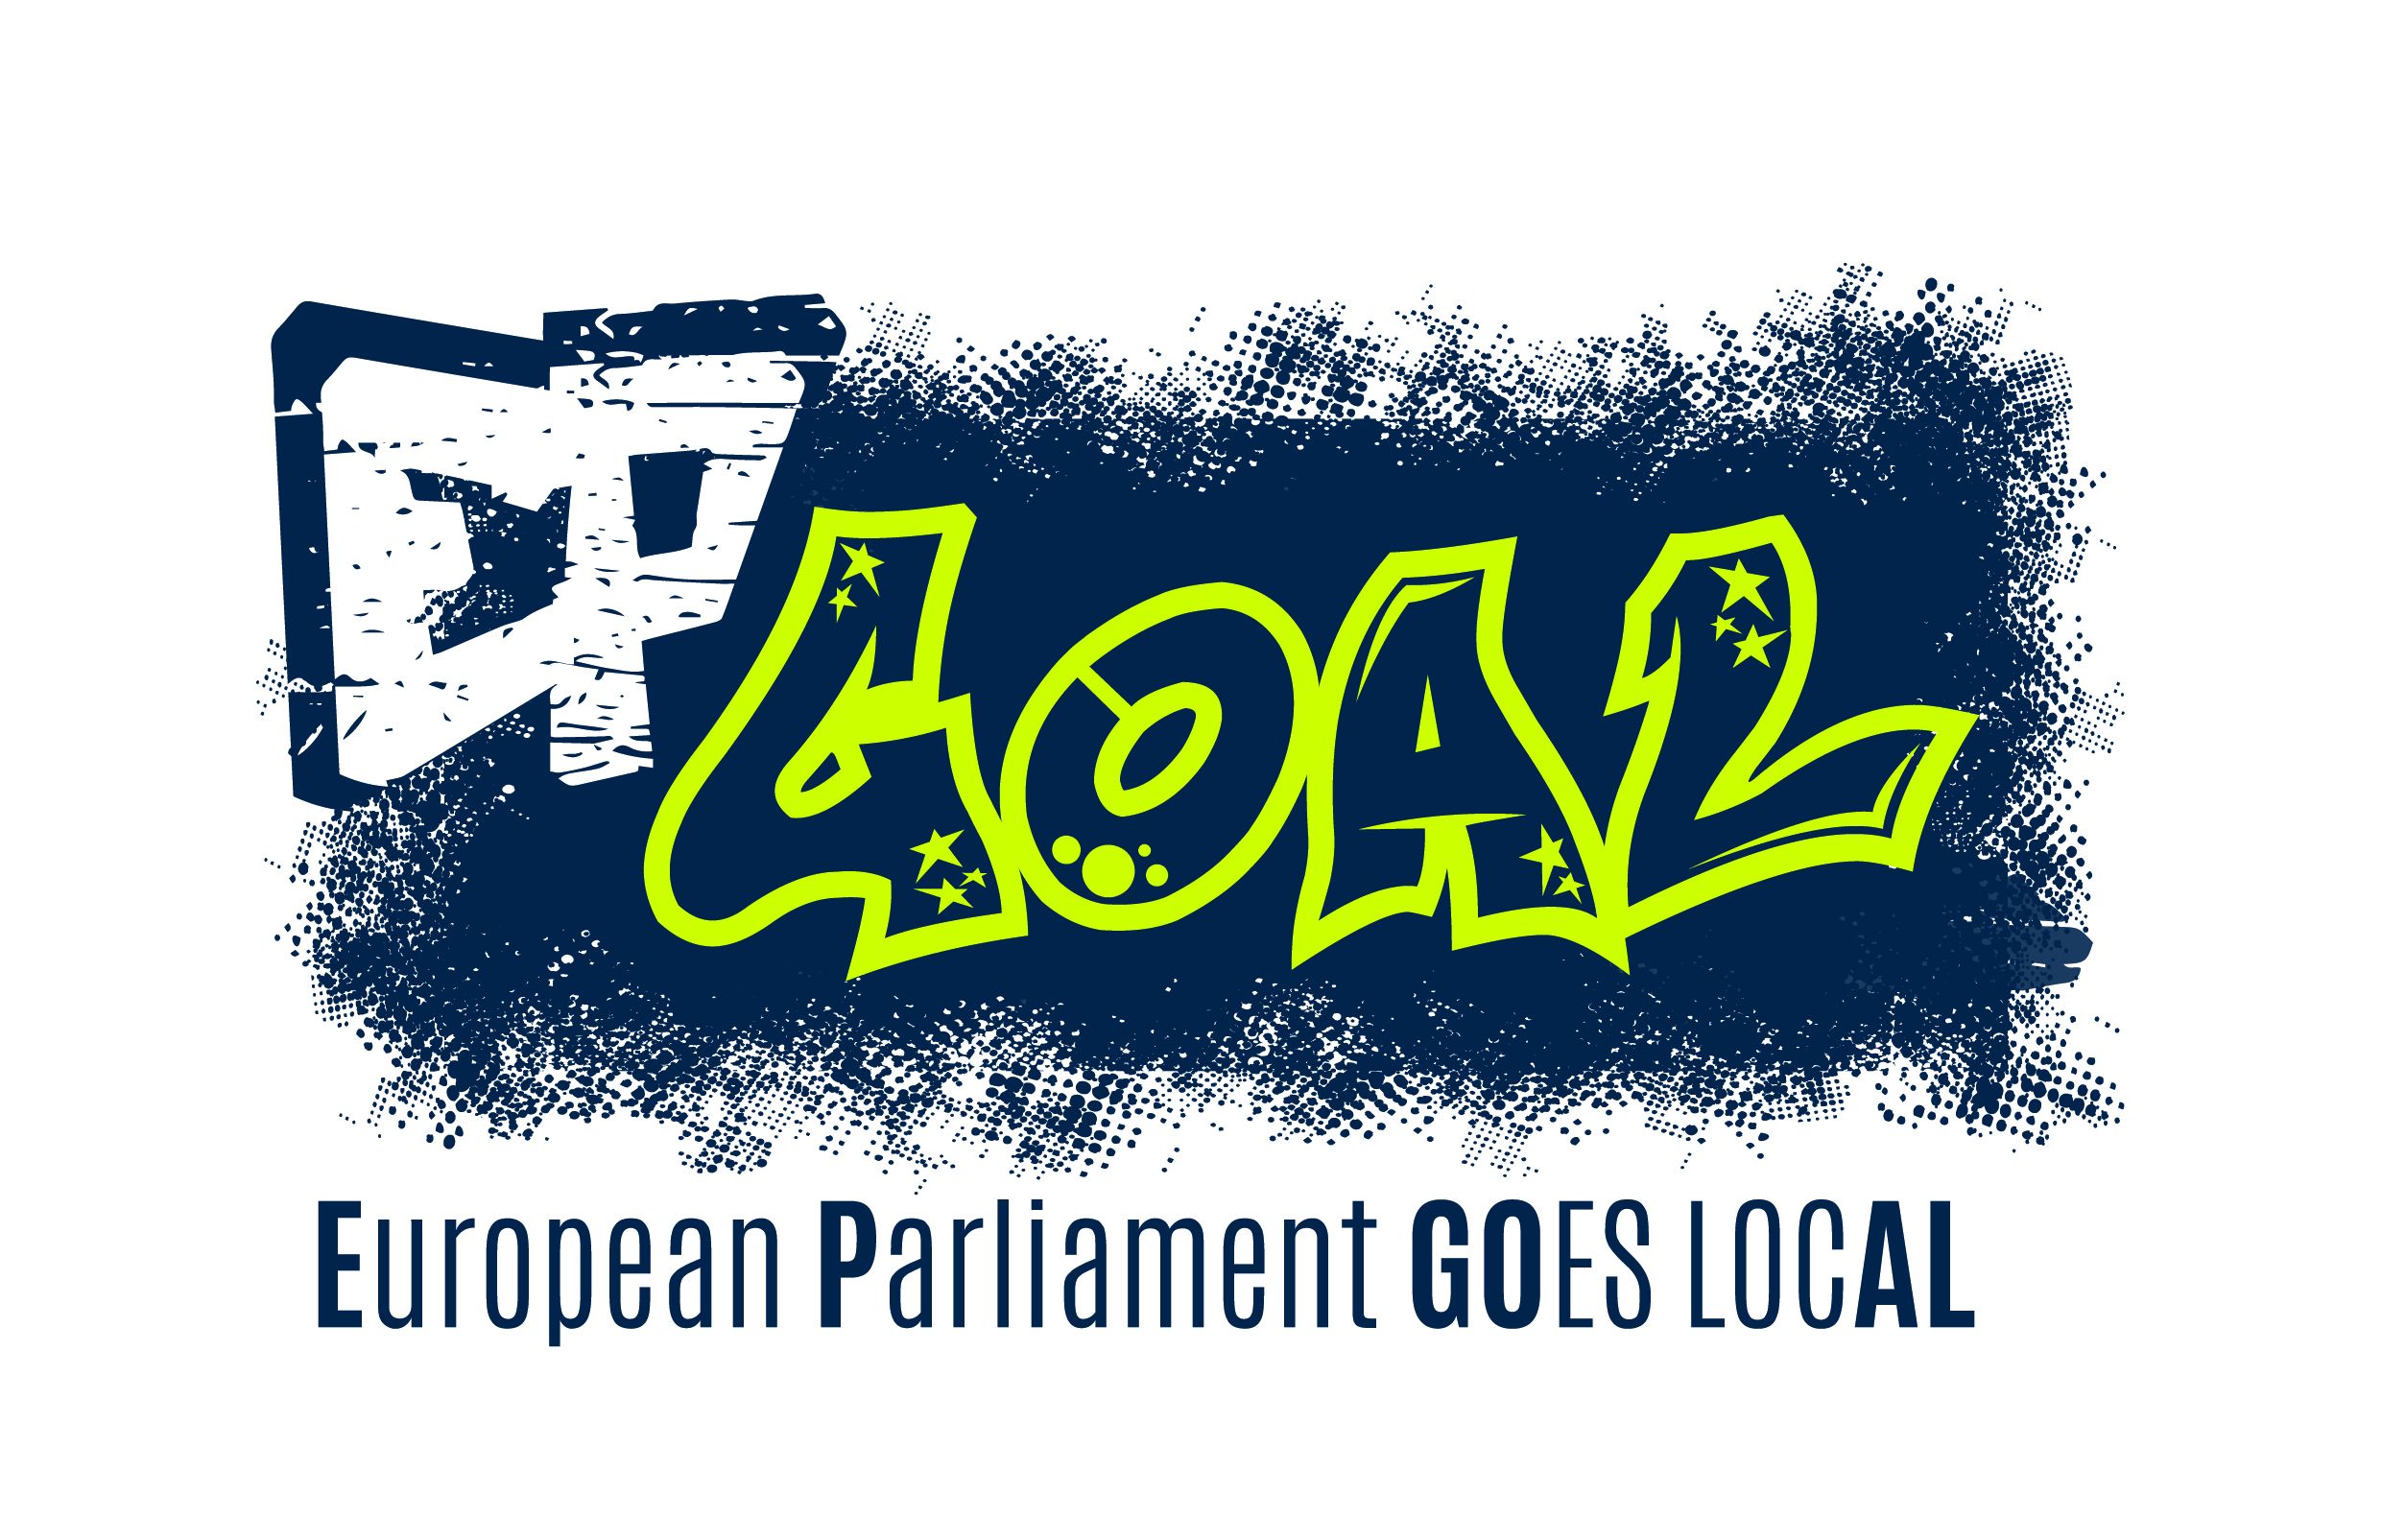 EP-GOAL: European Parliament GOes locAL